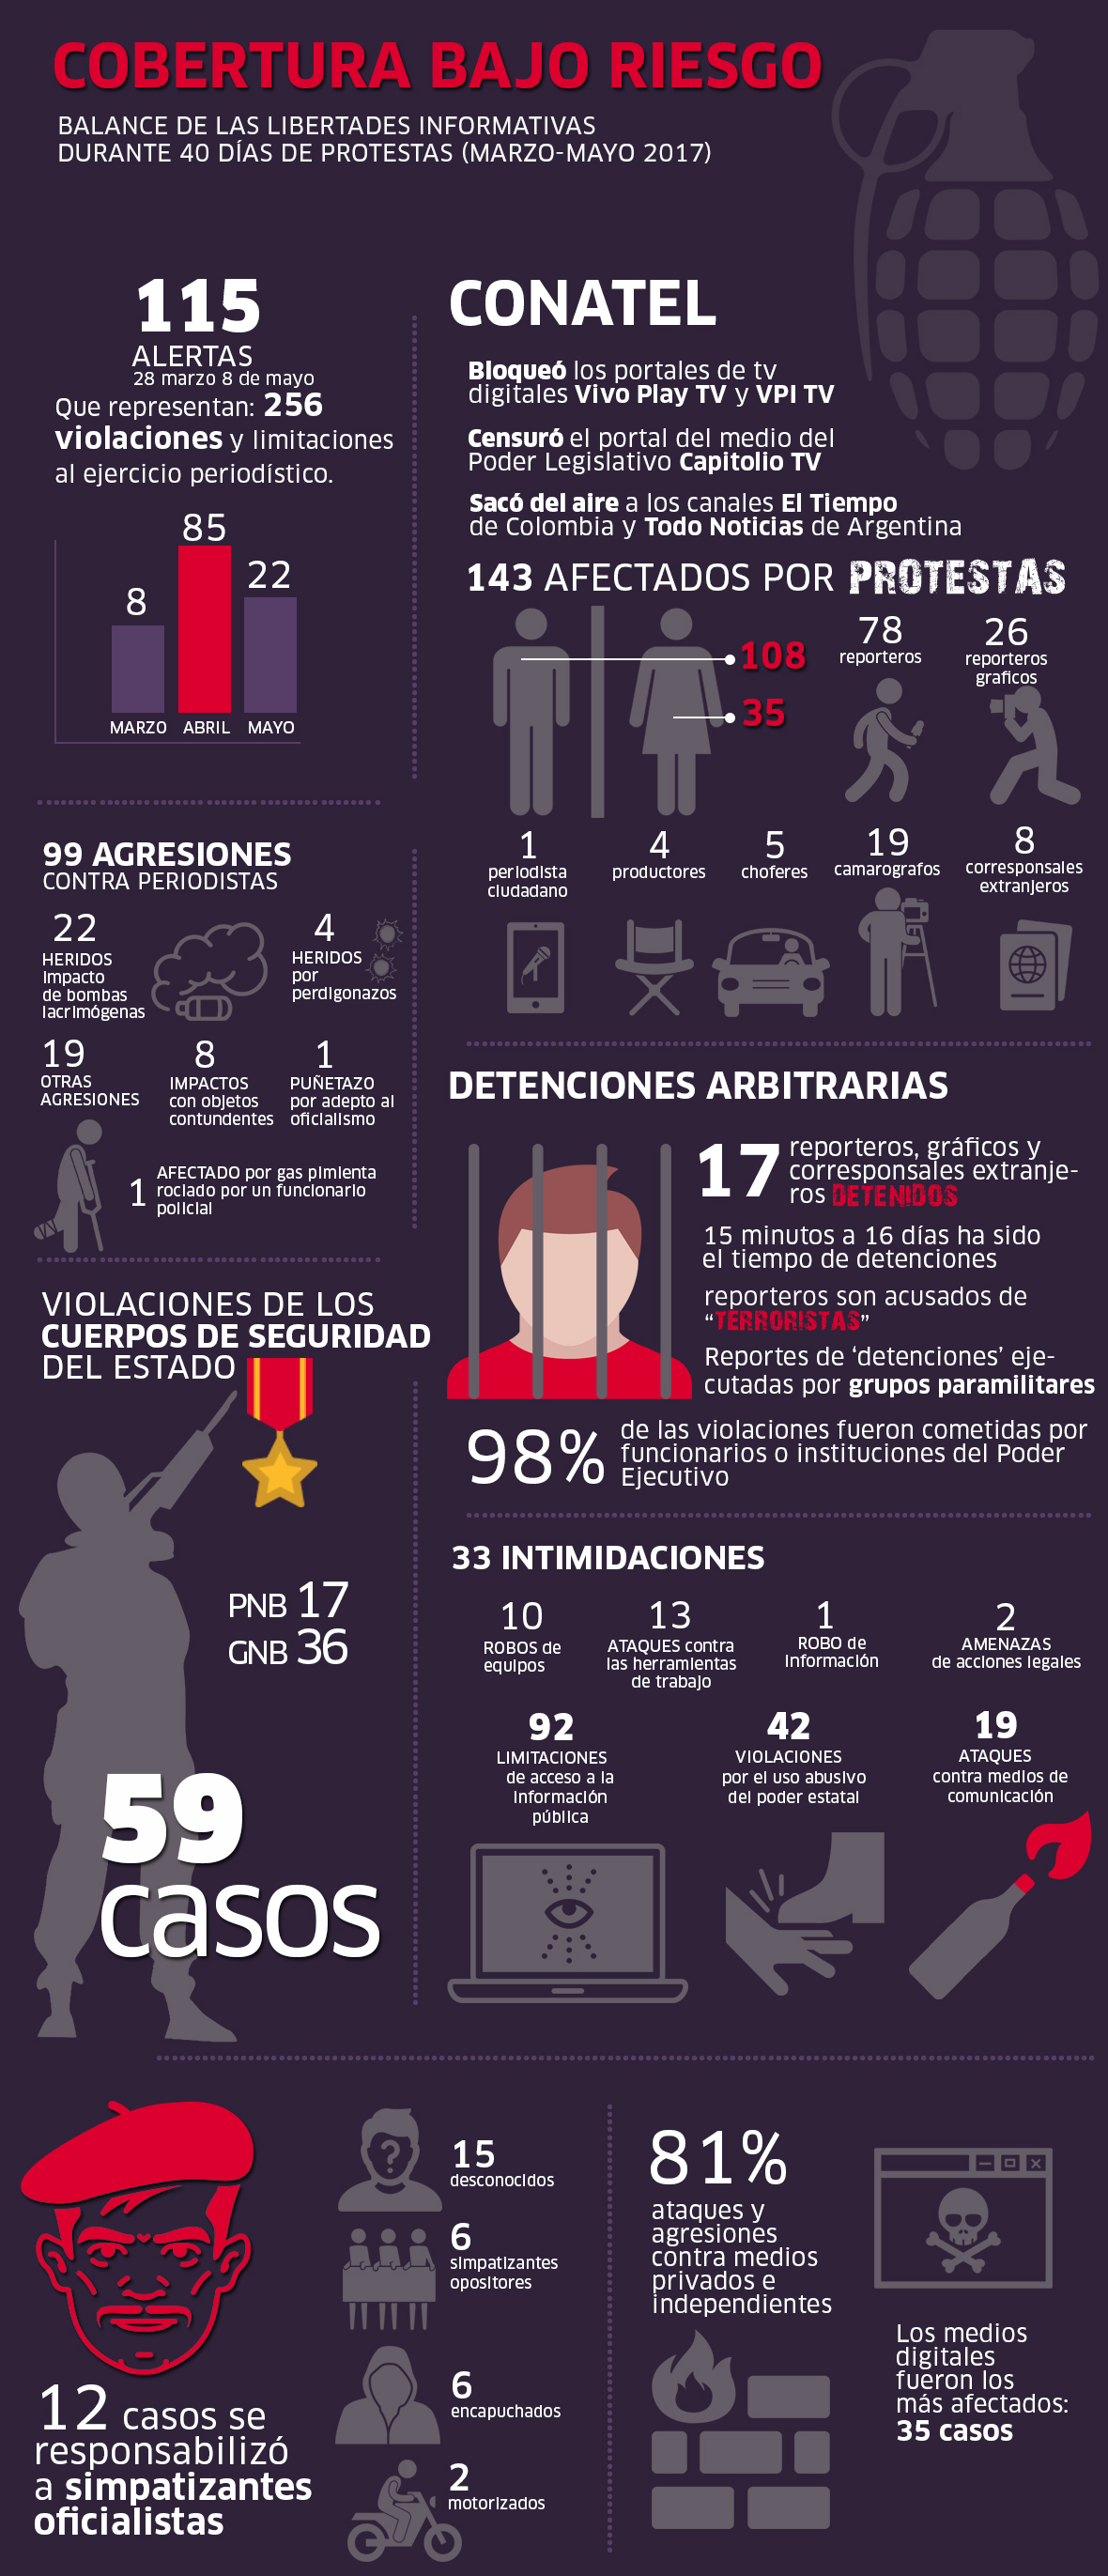 colombianos - Noticias y  Generalidades - Página 9 Cobertura-bajo-riesgo